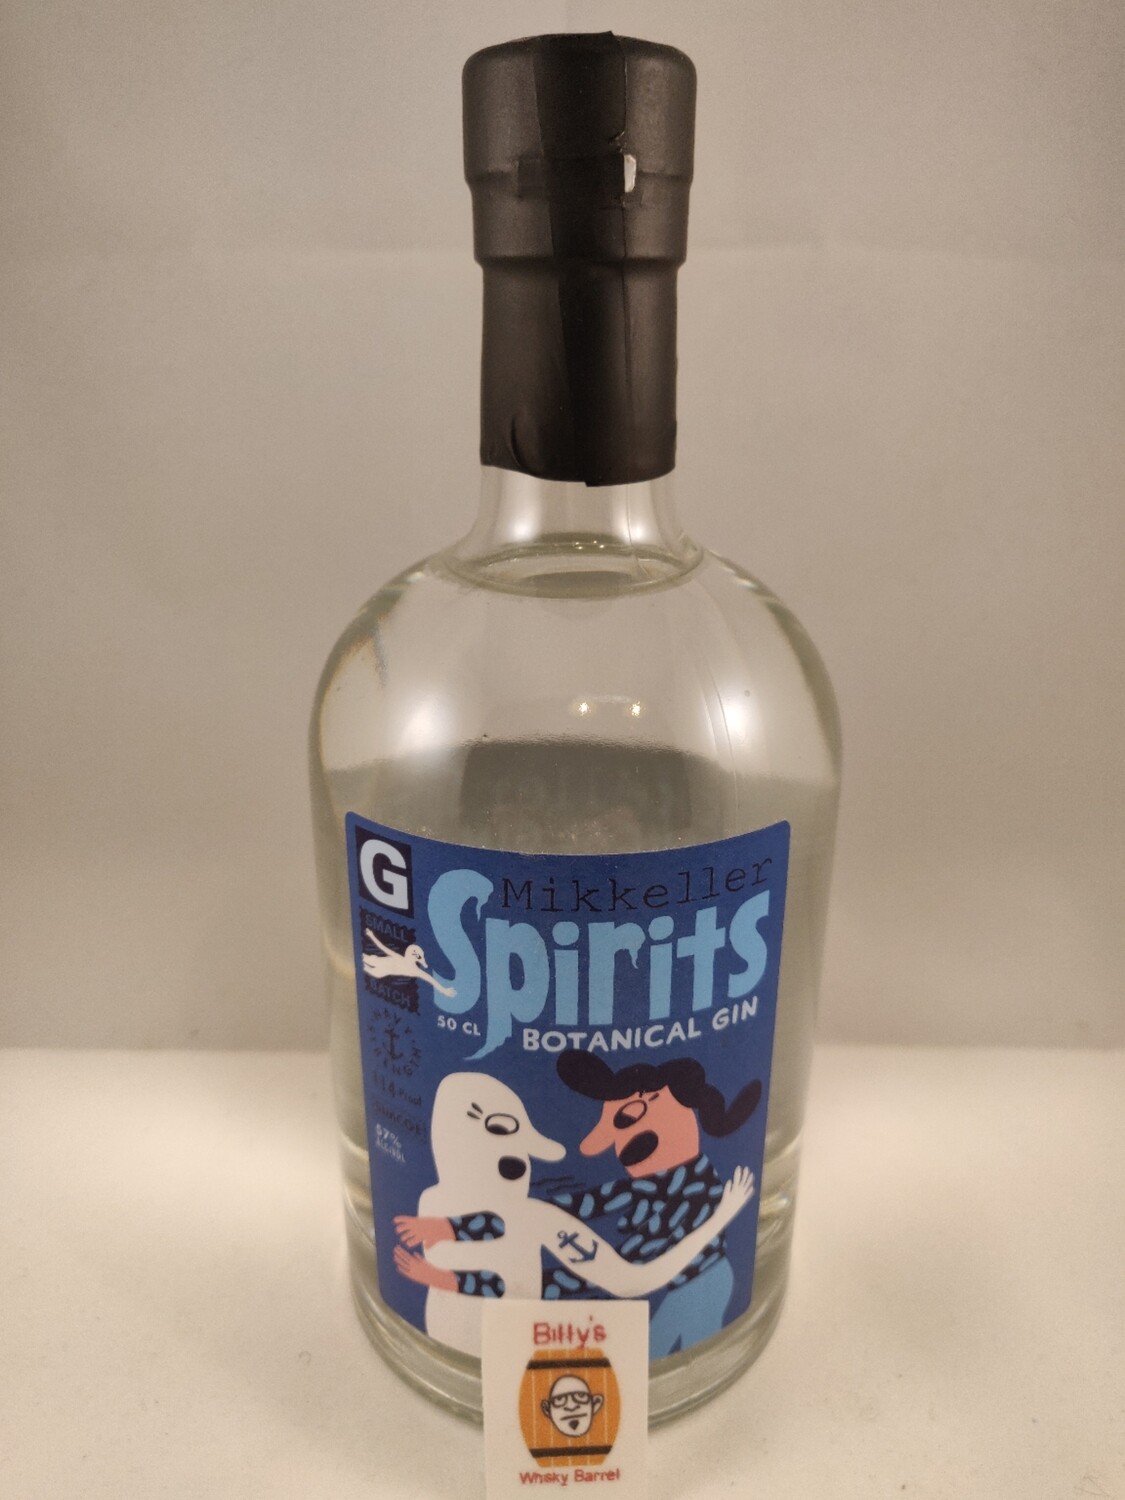 Mikkeller Spirits Botanical Gin - Navy Strength (50cl - 57%)